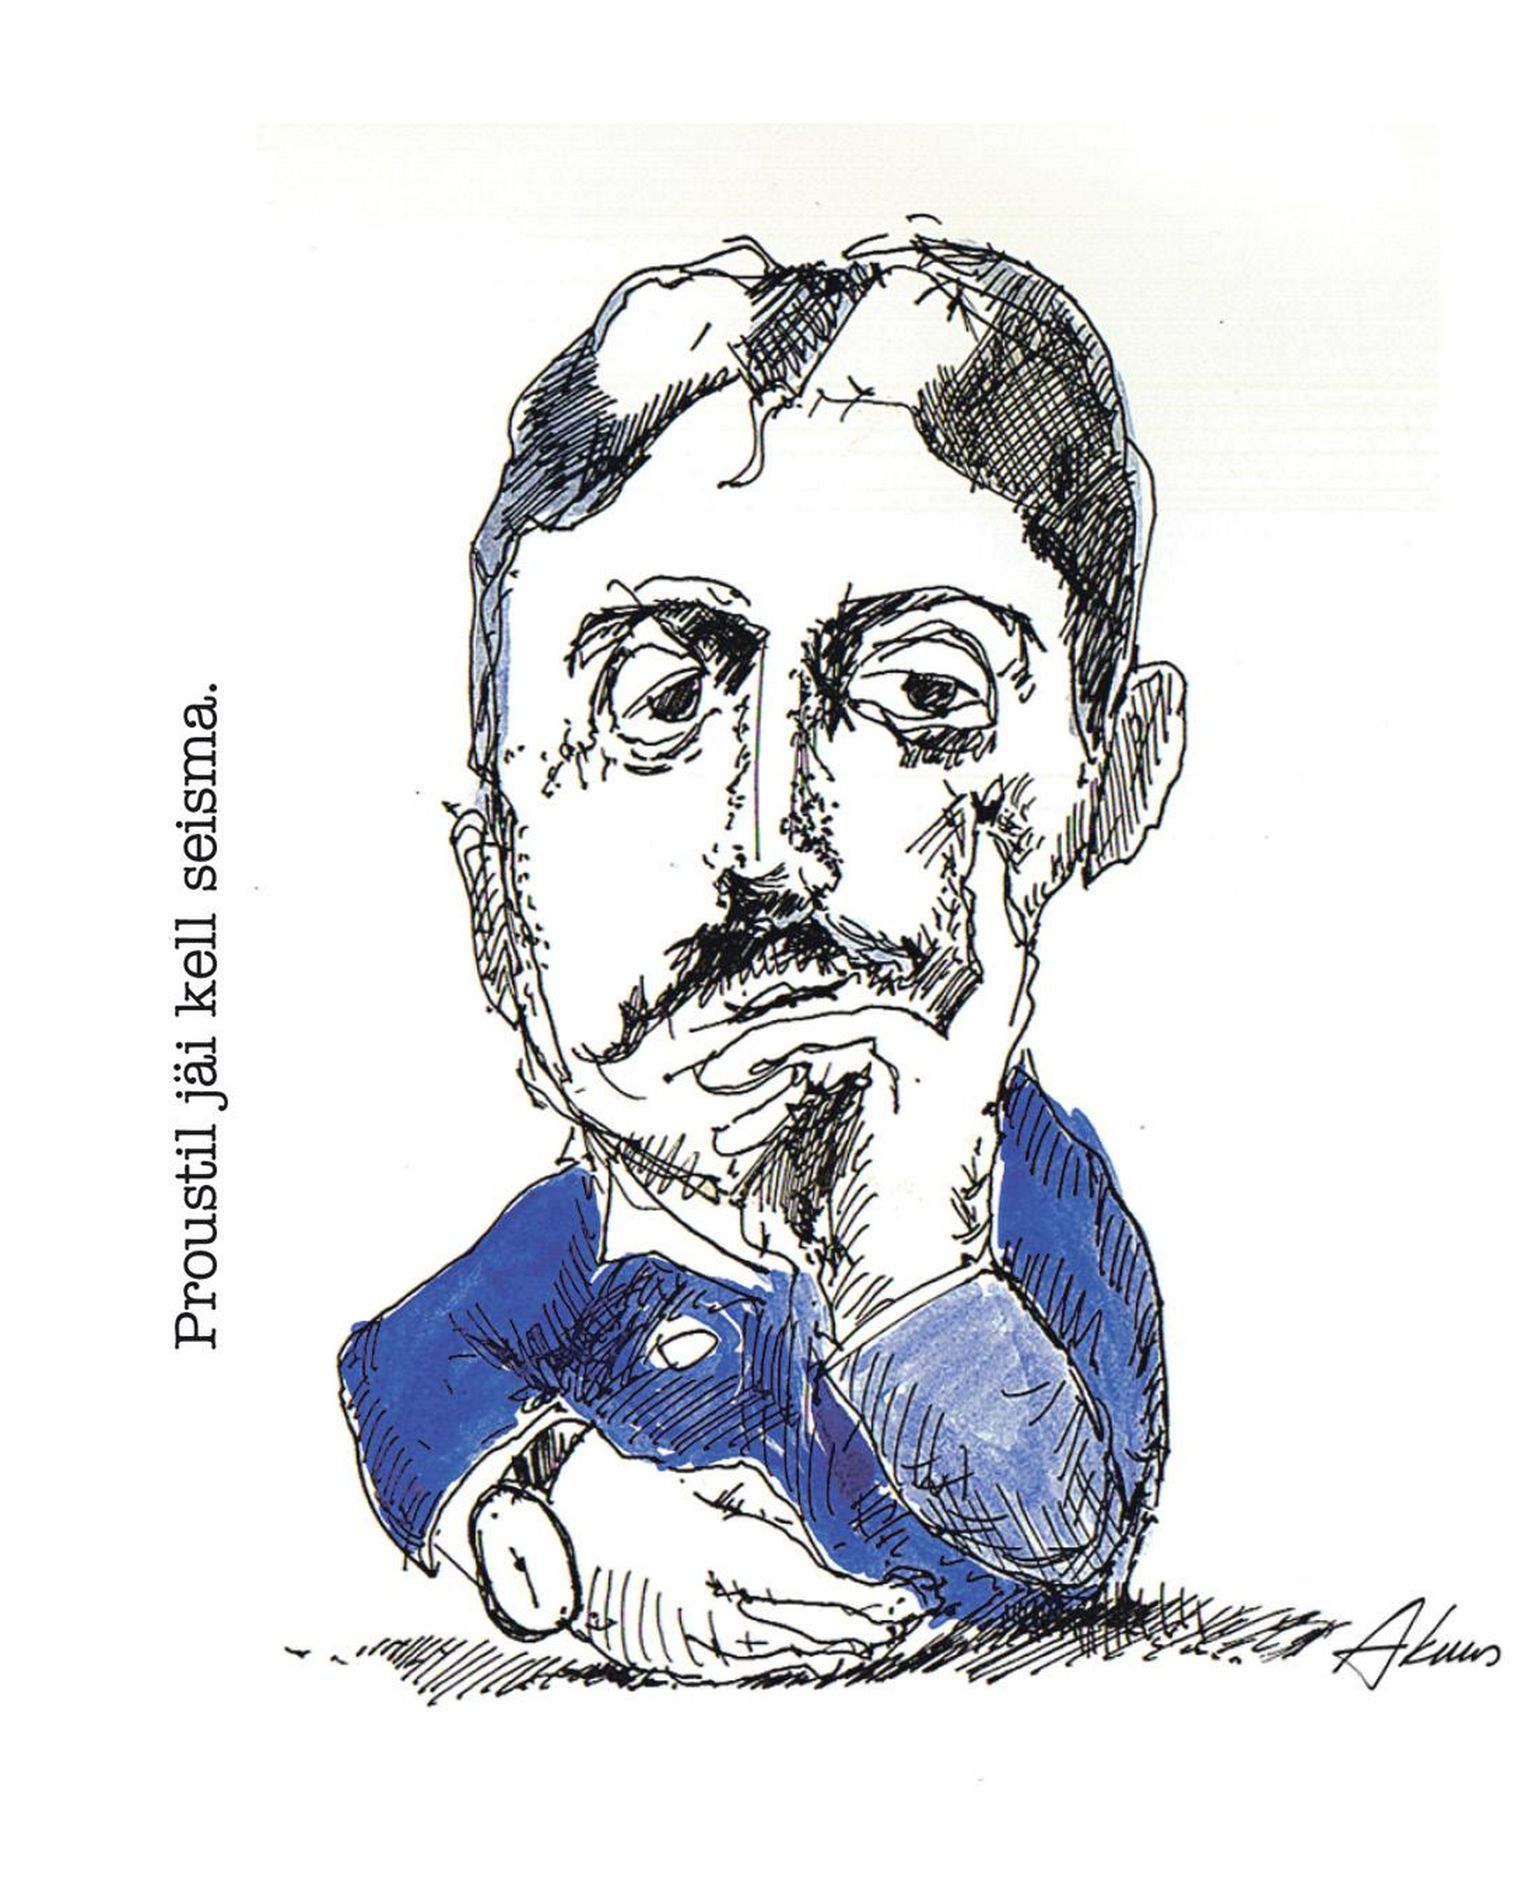 Proustil jäi kell seisma